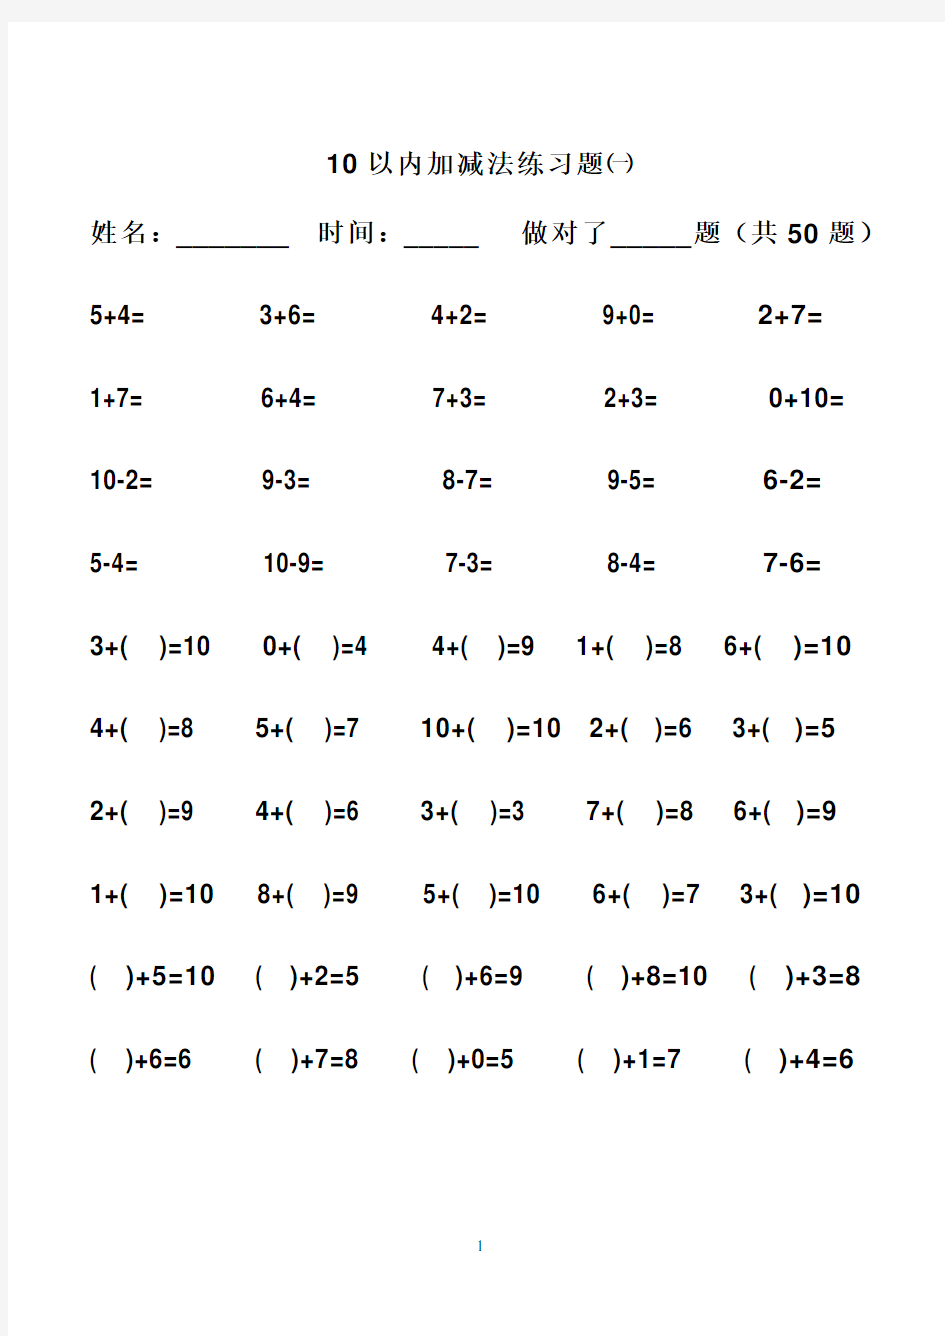 幼儿算术---10以内加减法练习题_直接打印版 (1)